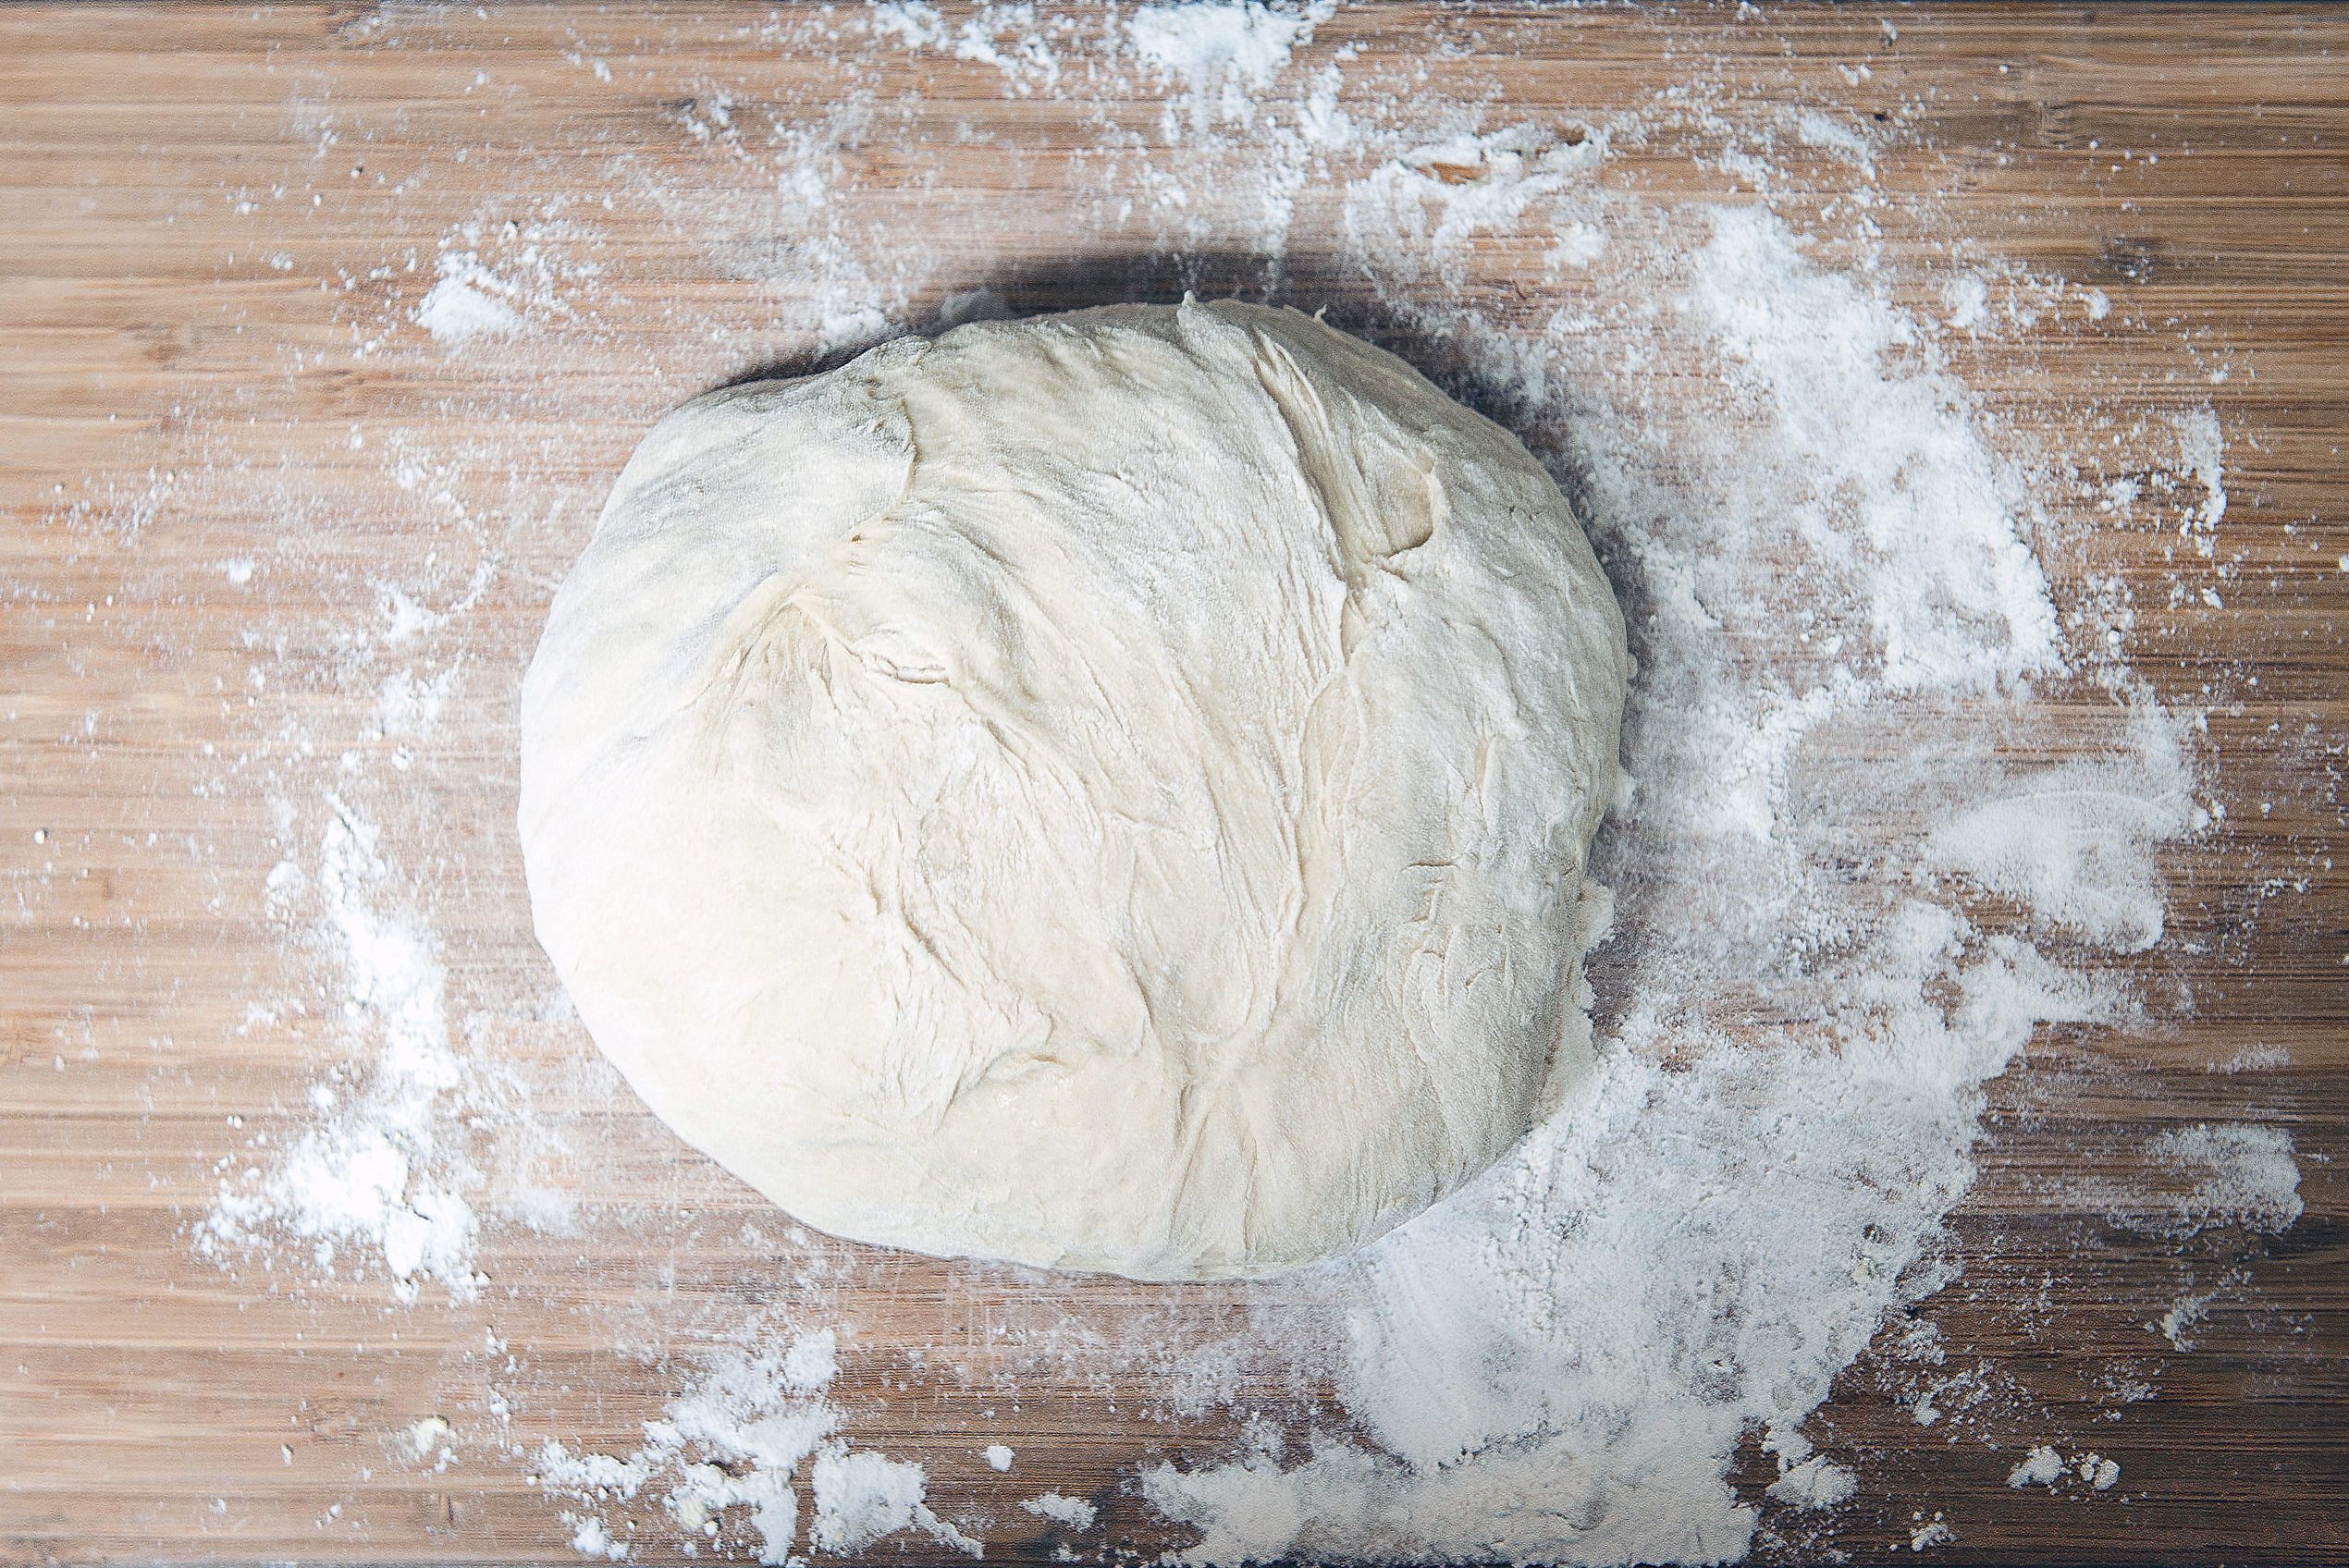 Bread dough on floured surface